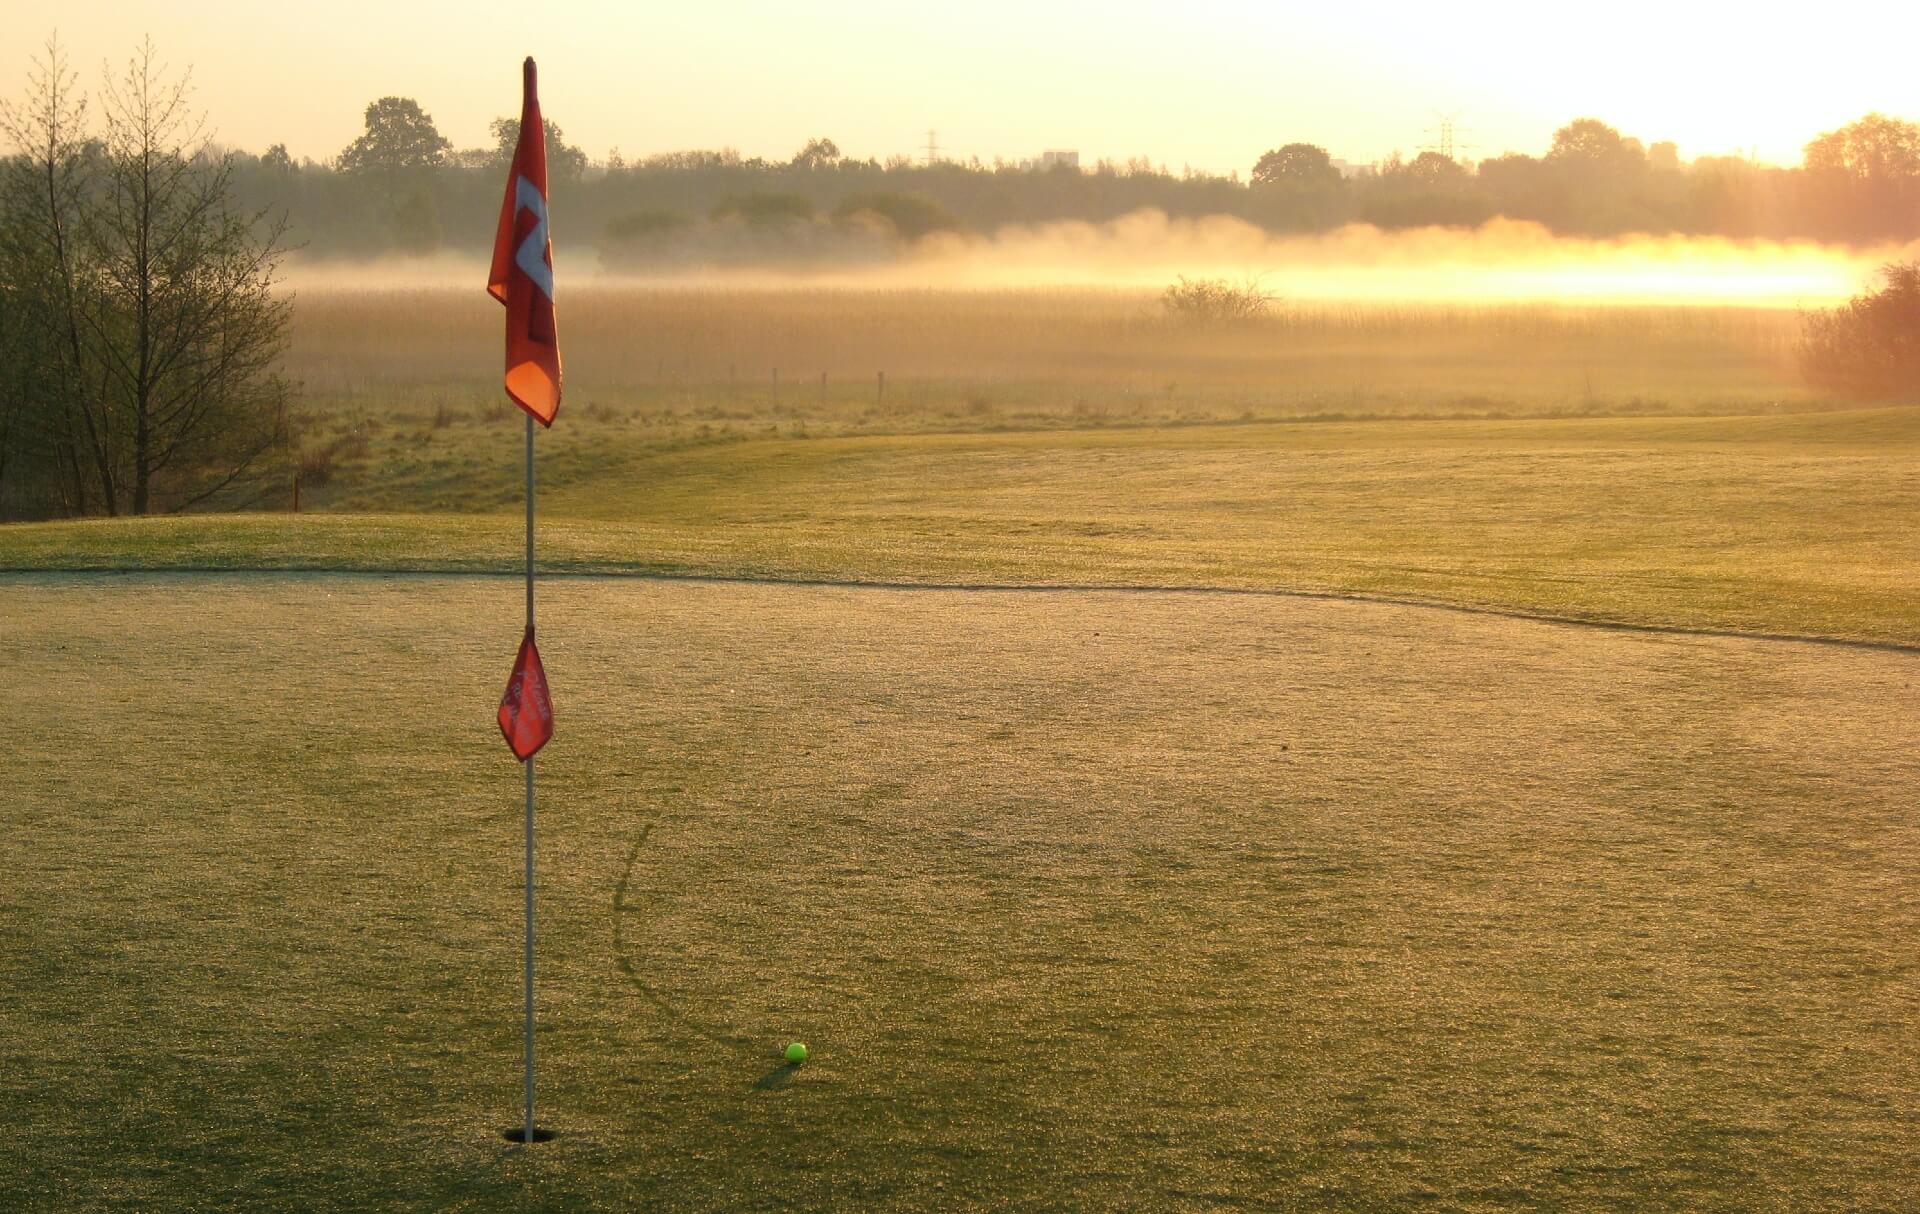 Ball near a golf hole on a golf course during sun set